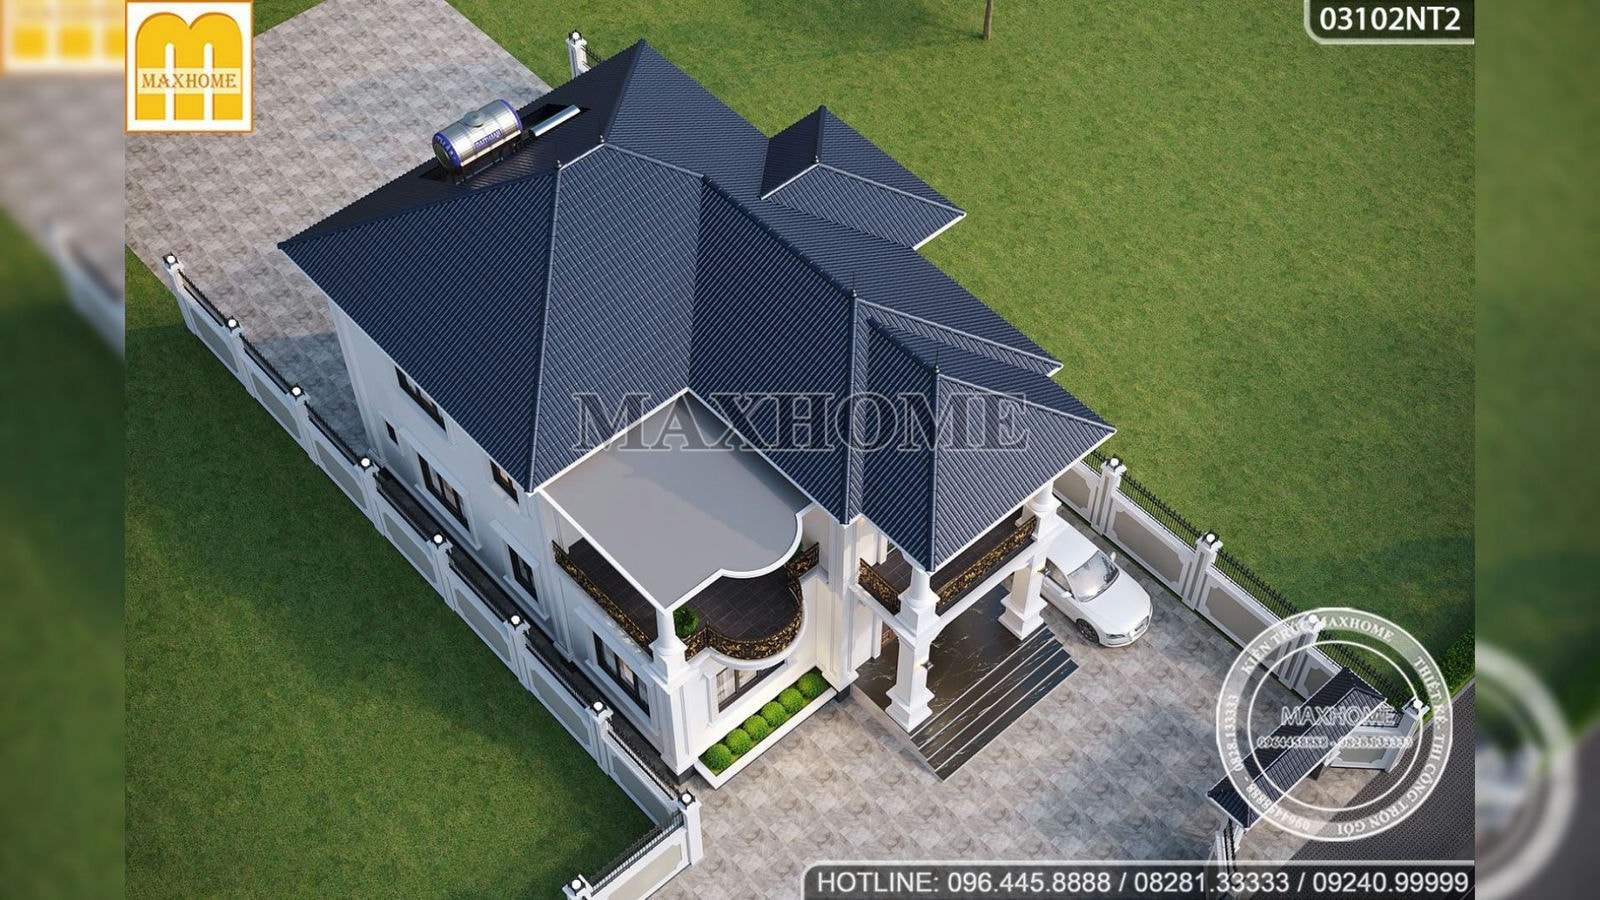 Thiết kế mẫu nhà 2 tầng tân cổ điển đẹp, sang trọng 2023 | MH01706